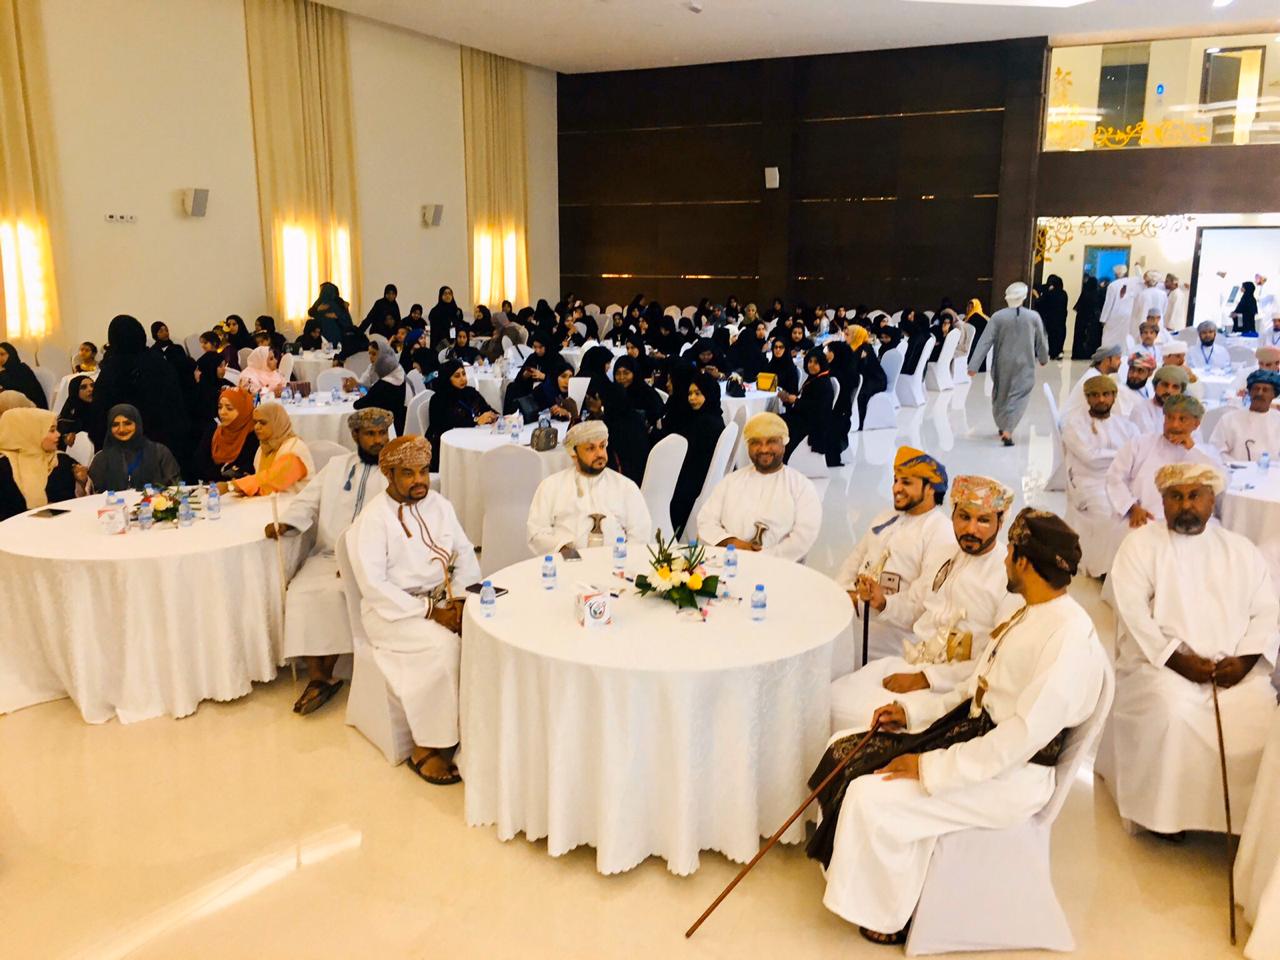 توصيات مهمة في المؤتمر الأول للعمل التطوعي بسلطنة عمان صحيفة